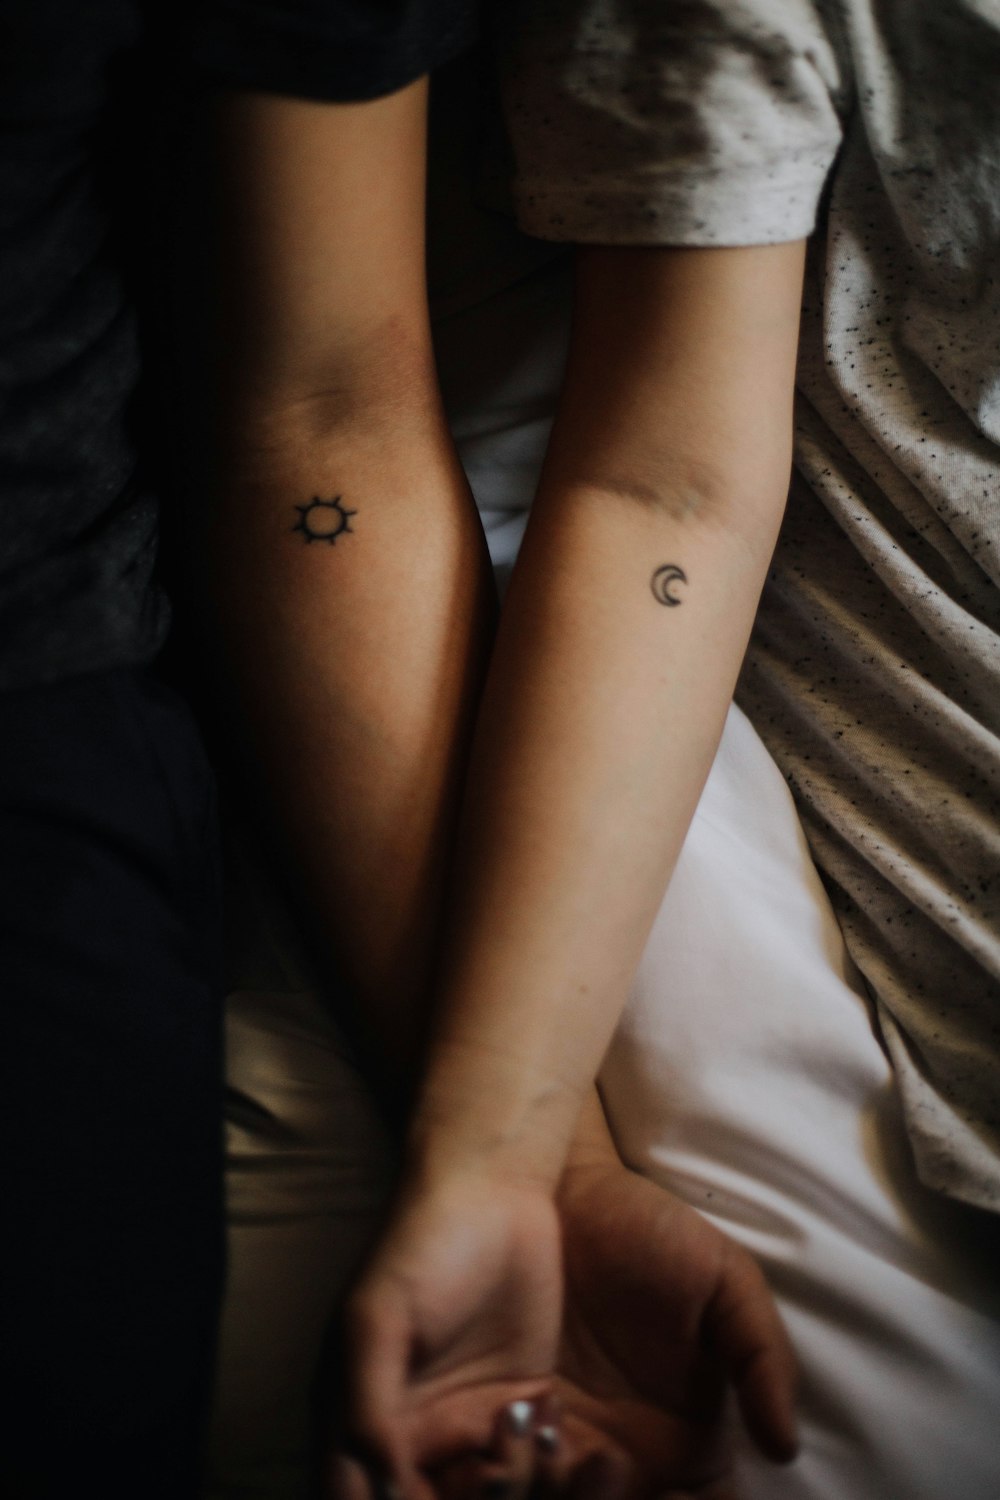 duas pessoas mostrando suas tatuagens nas mãos